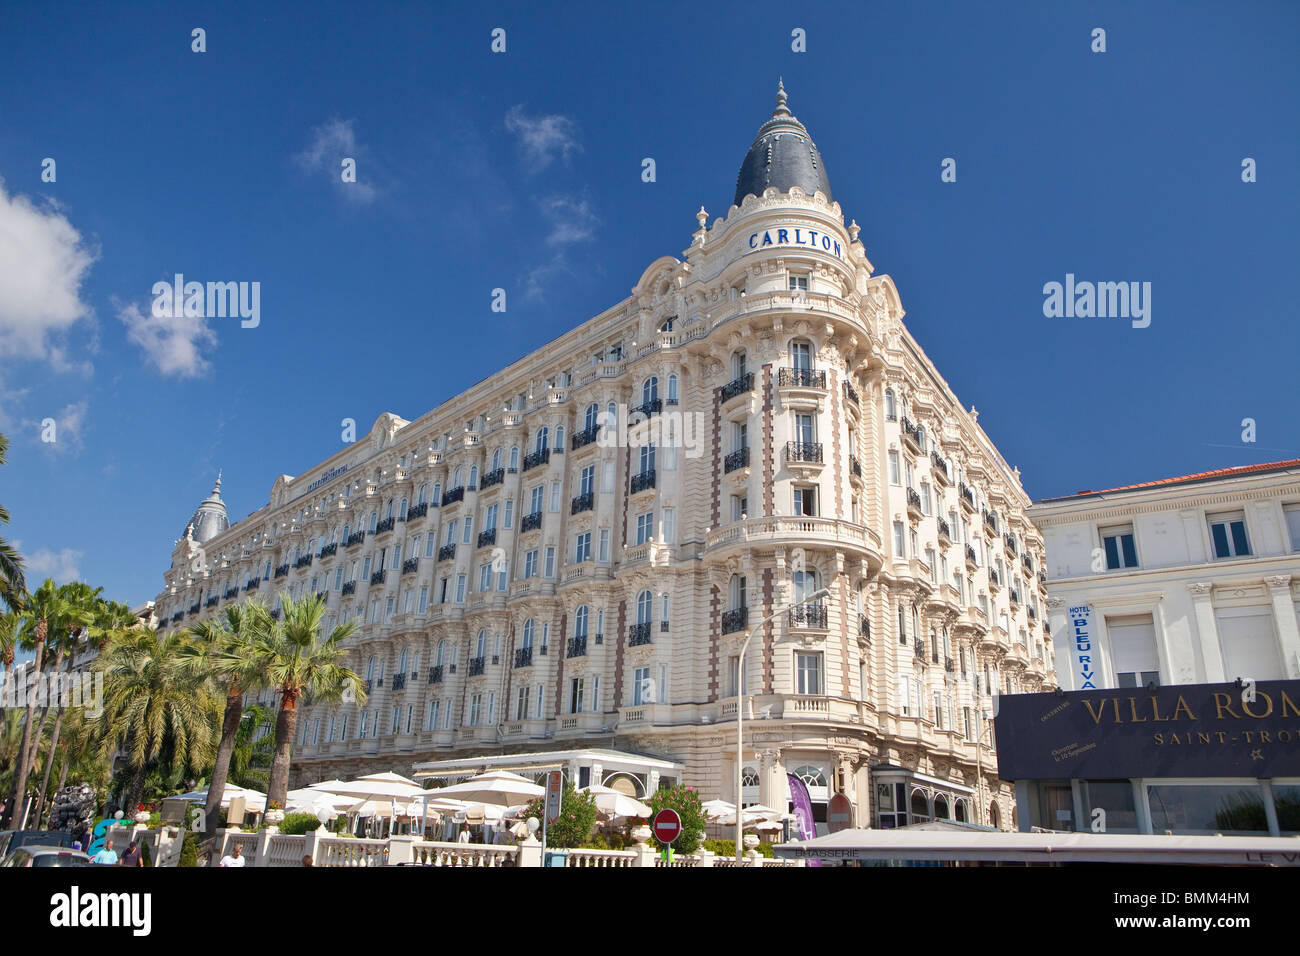 Le luxueux Hôtel Carlton, sur la Croisette, Cannes, France, Europe. Banque D'Images